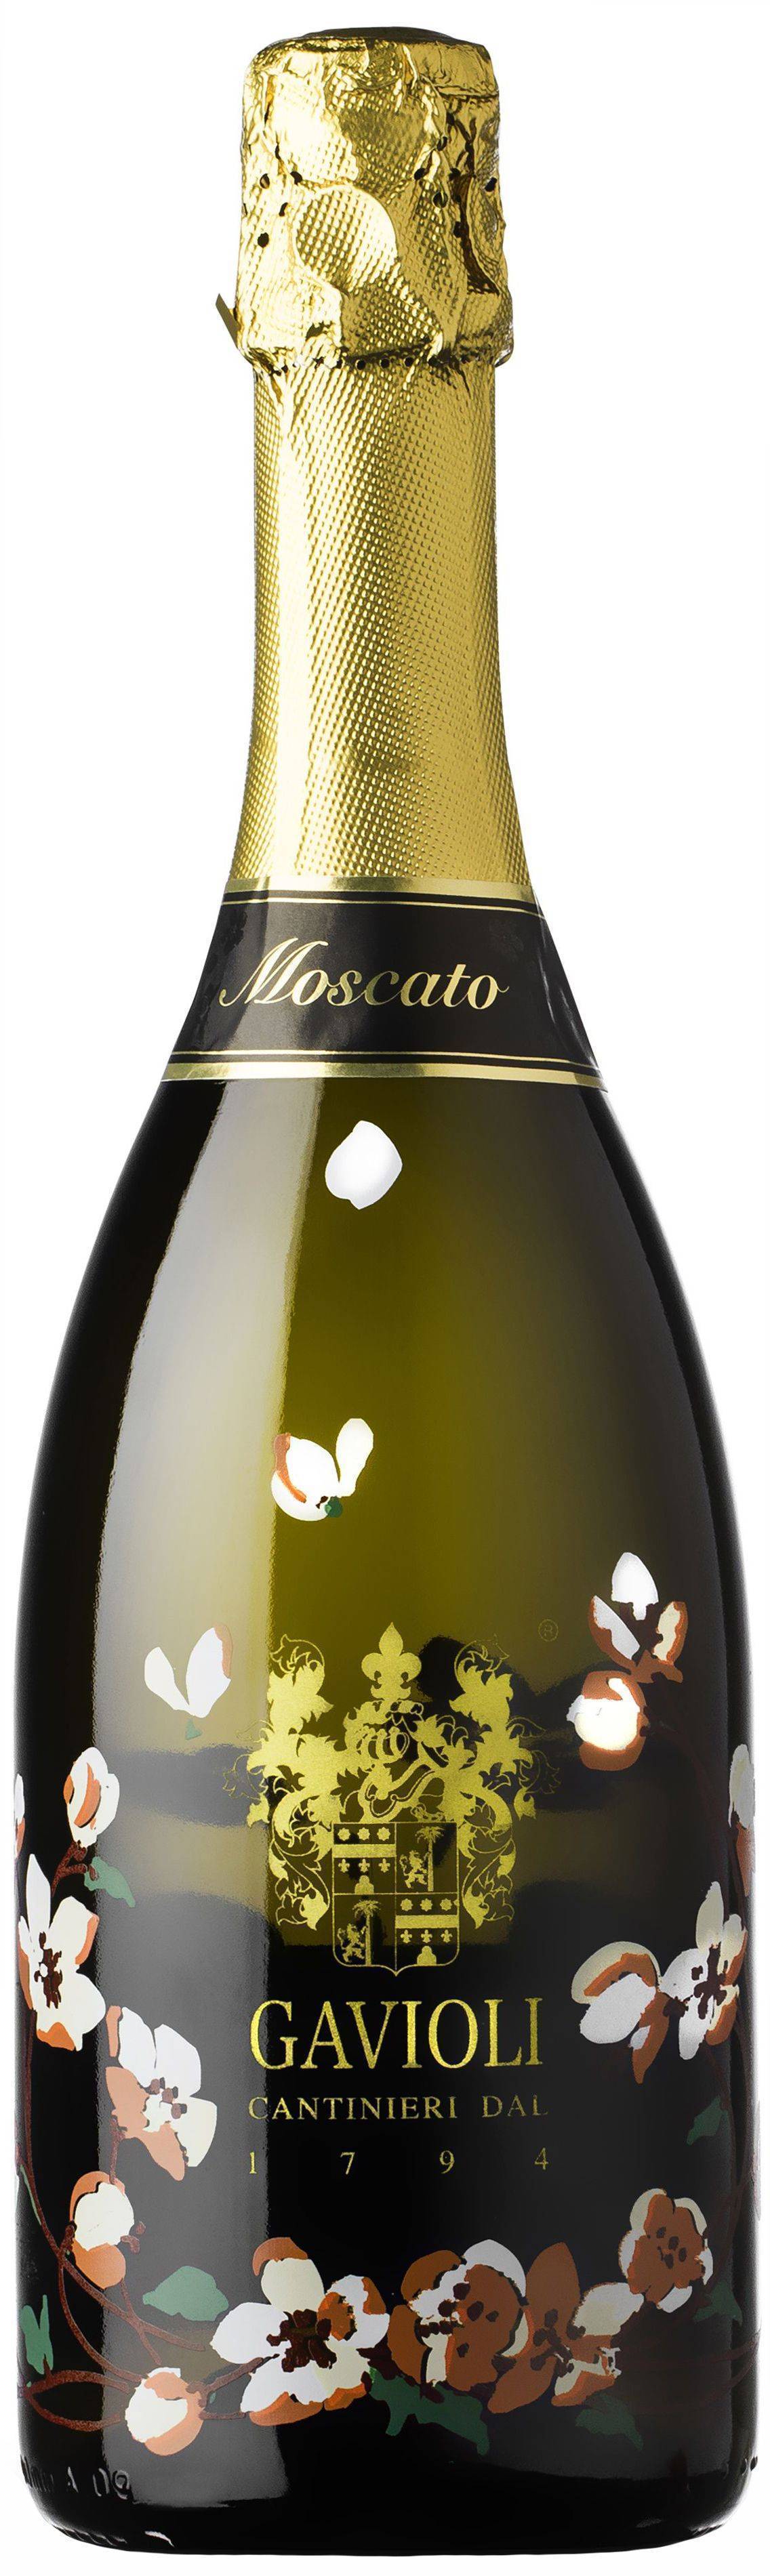 Moscato d asti шампанское и игристое вино: обзор, цена, отзывы